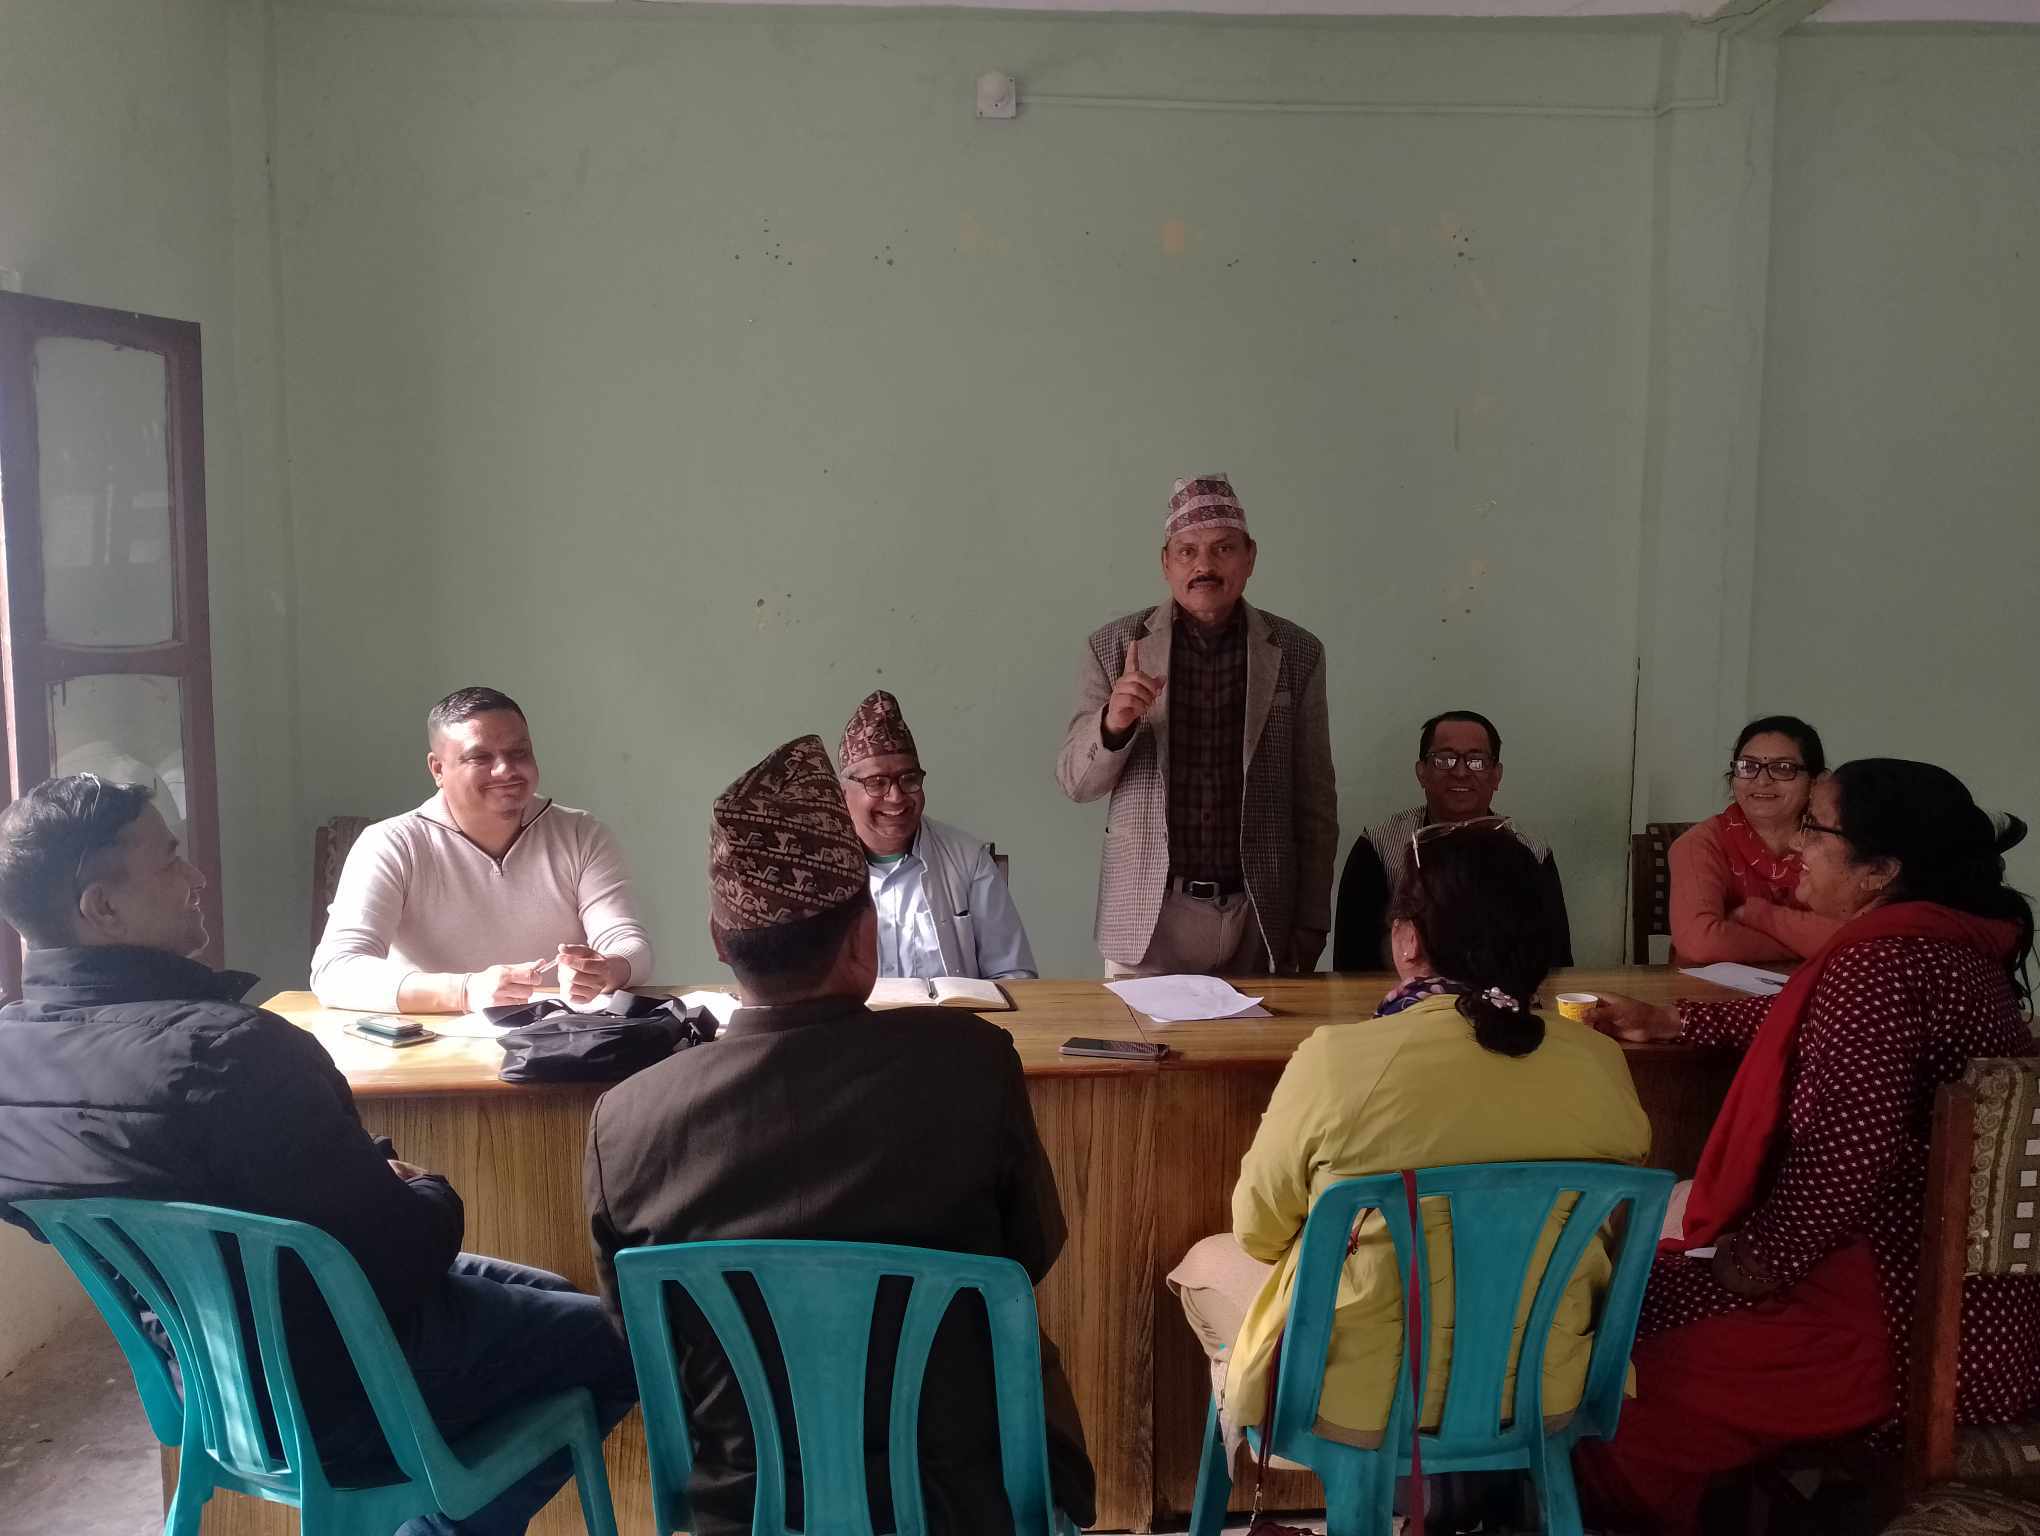 असङ्गठित क्षेत्रका श्रमिकलाई सामाजिक सुरक्षा कोषमा आवद्ध गर्ने जिफन्ट लुम्बिनीको निर्णय